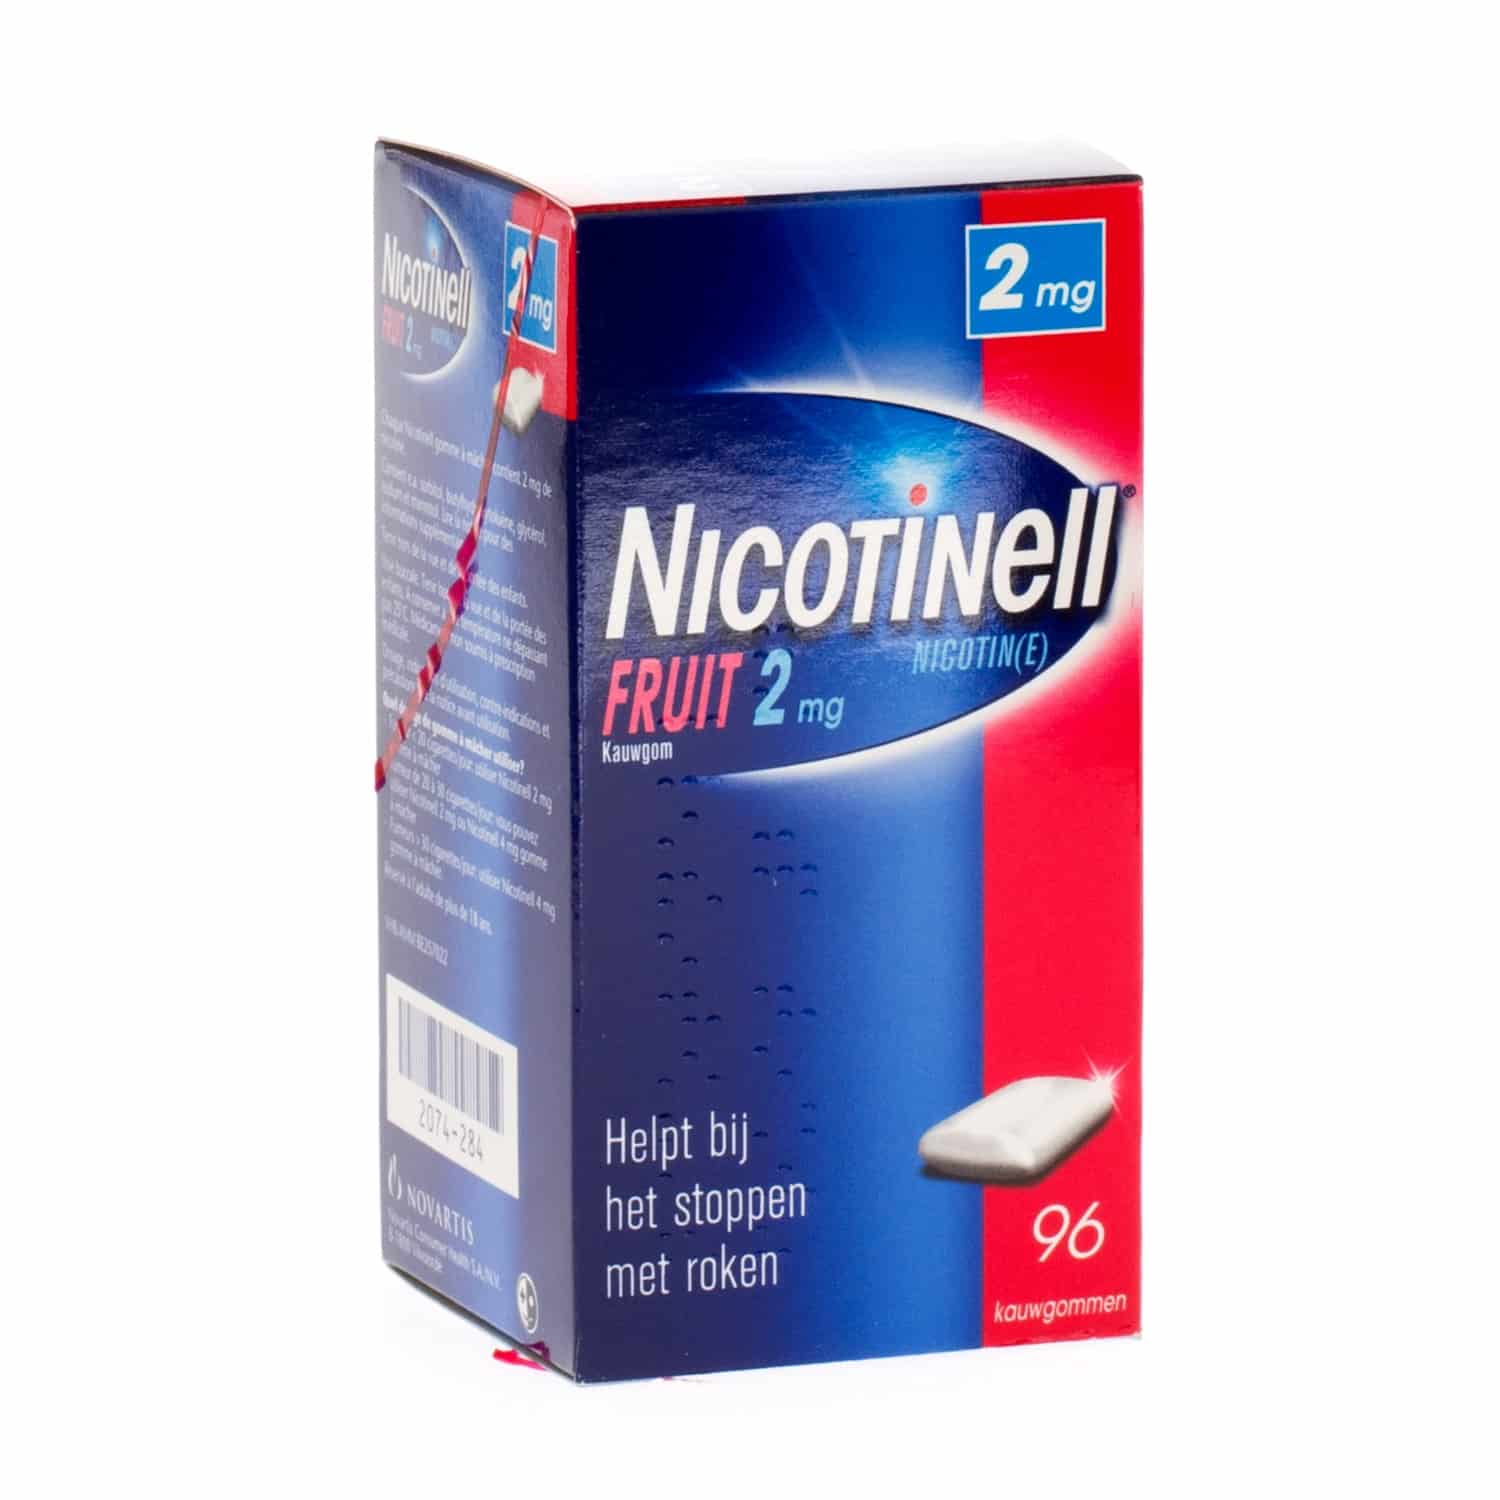 Nicotinell Fruit 2 mg Kauwgom